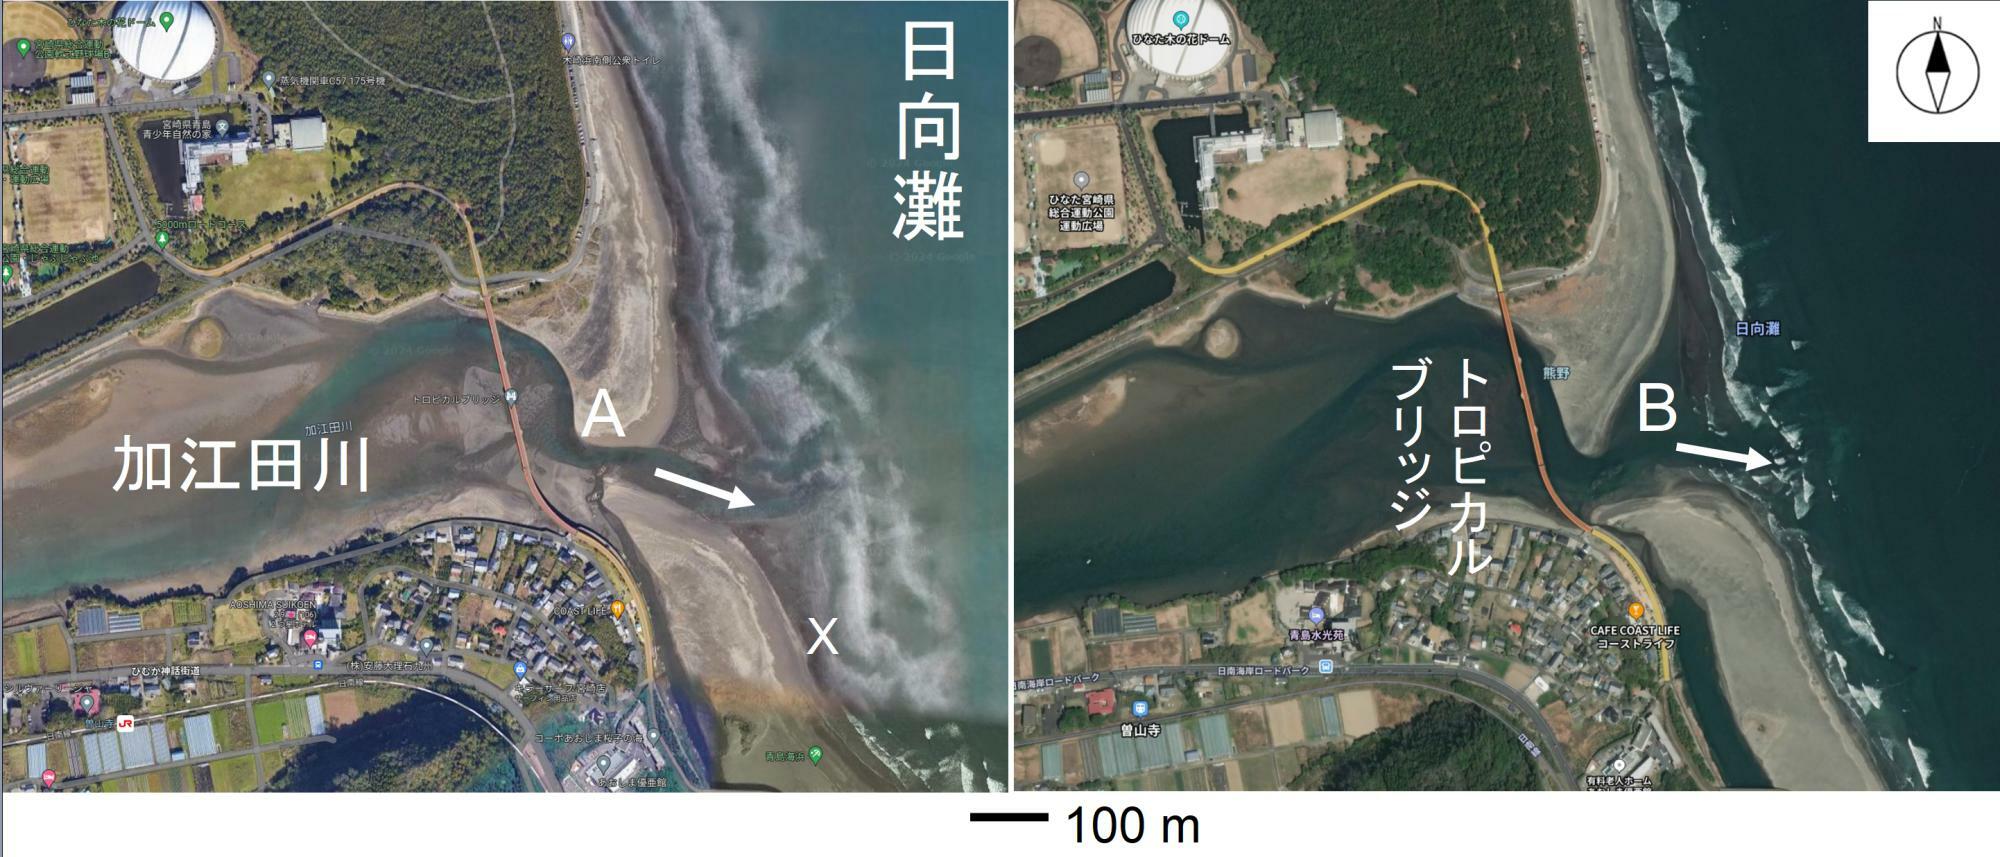 図1 加江田川河口付近の上空写真。左は比較的潮の引いている時間帯で右は比較的潮が満ちている時間帯（左：Google mapから引用し、筆者一部加筆、右：Yahoo!mapから引用し、筆者一部加筆）